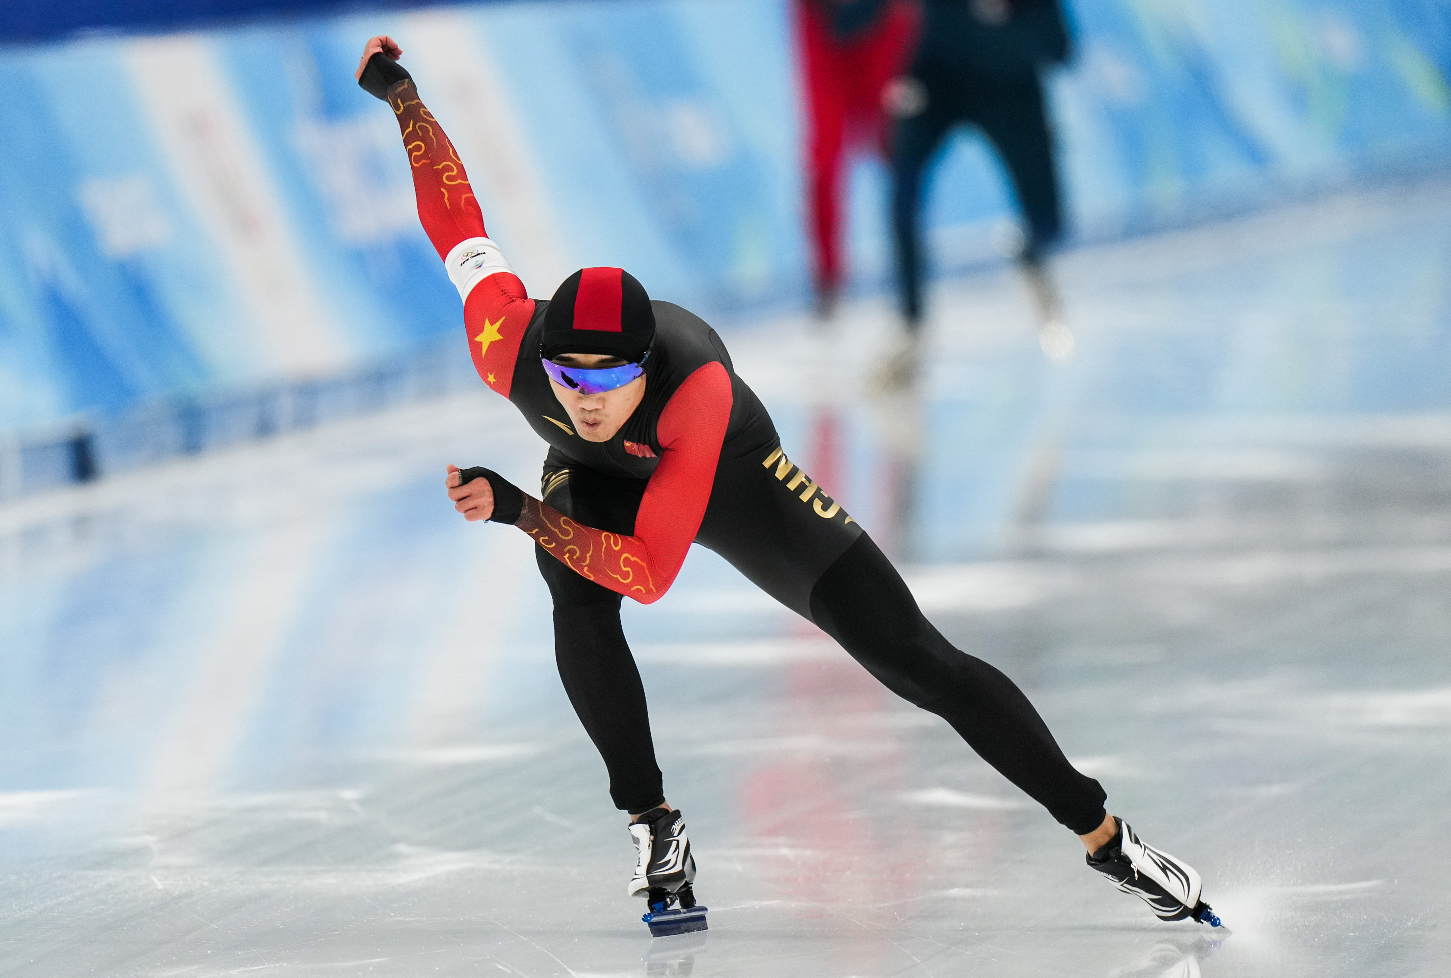 高亭宇夺得速度滑冰男子500米金牌,打破该项目奥运纪录